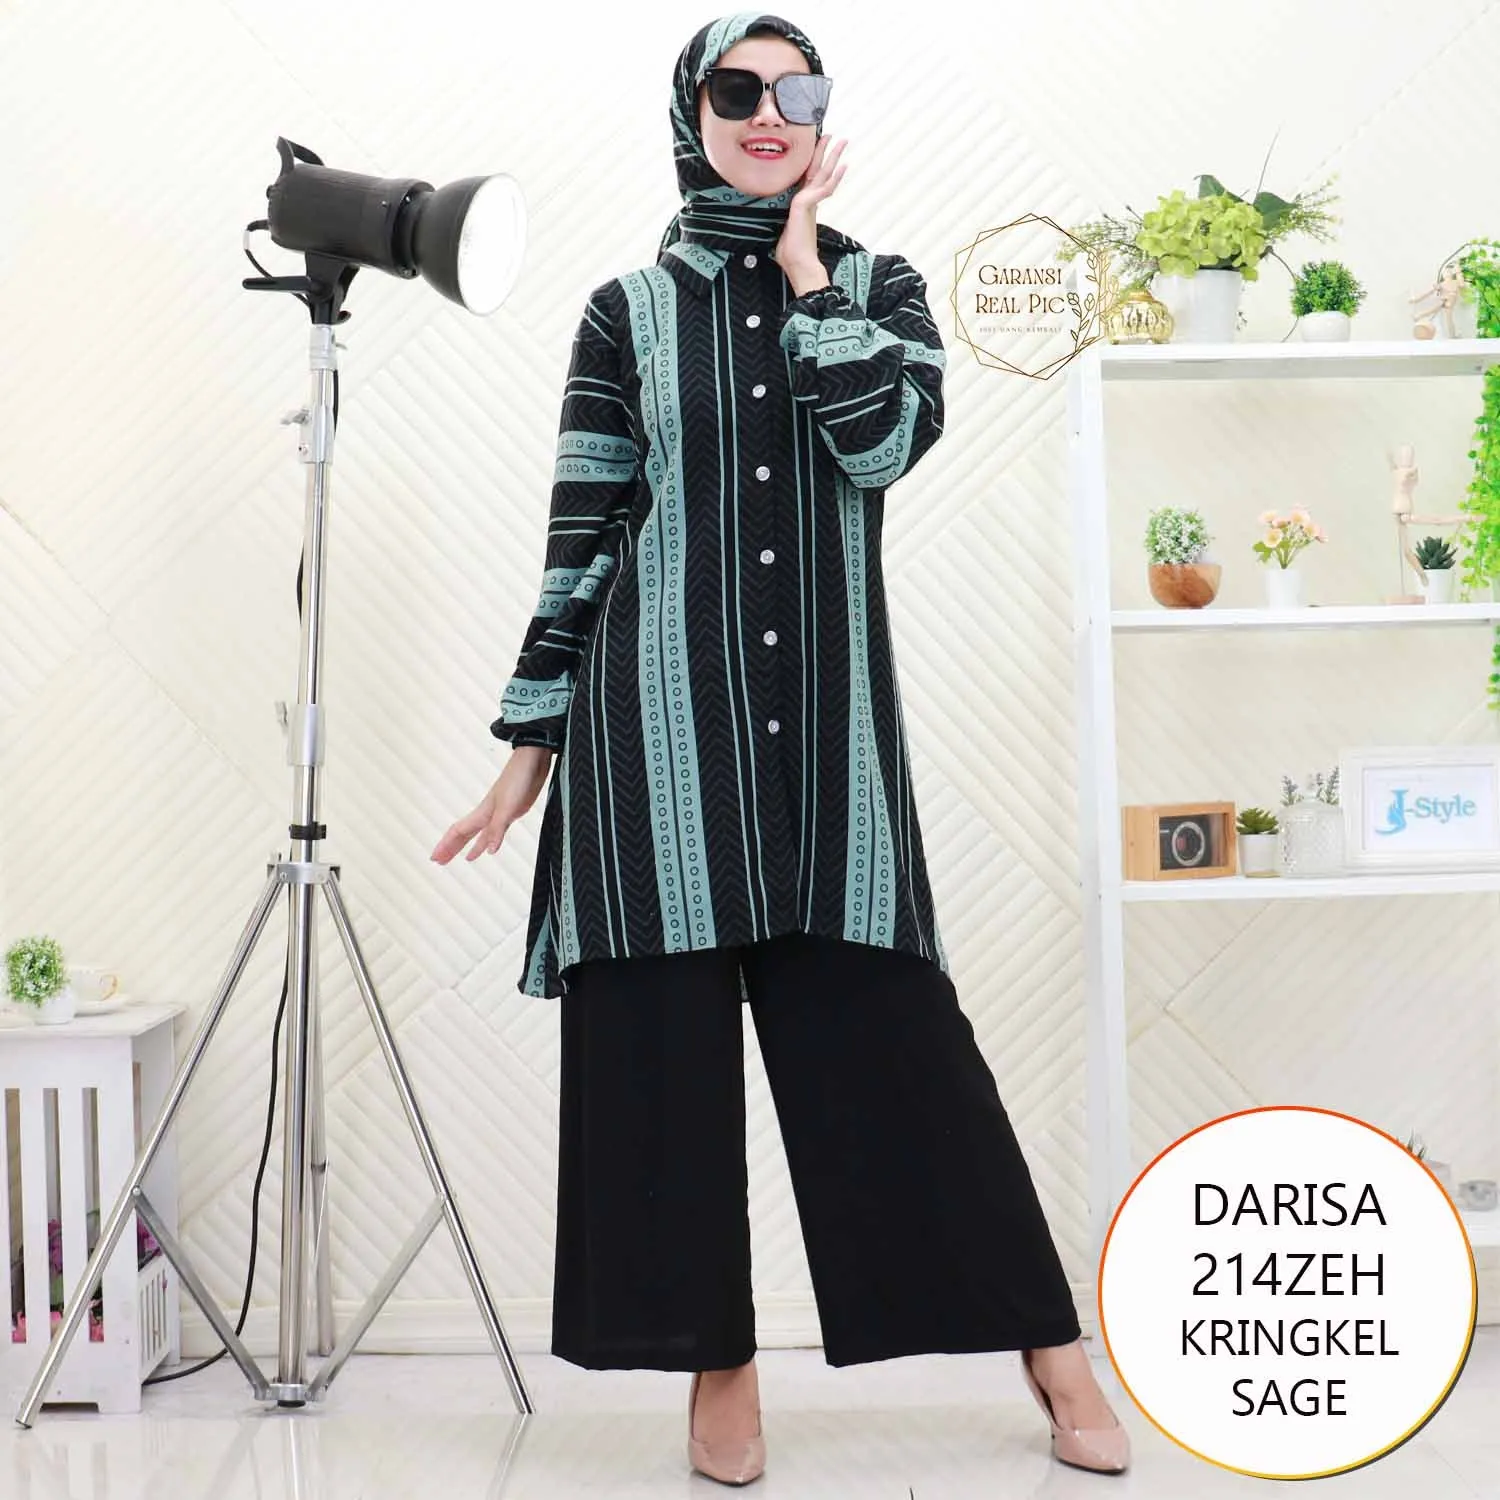 Darisa Oneset Tunik Set Hijab Kringkel Motif Busui Friendly 214ZEH Kringkel Airflow - bajubaru.id, Belanja Online di bajubaru.id saja 